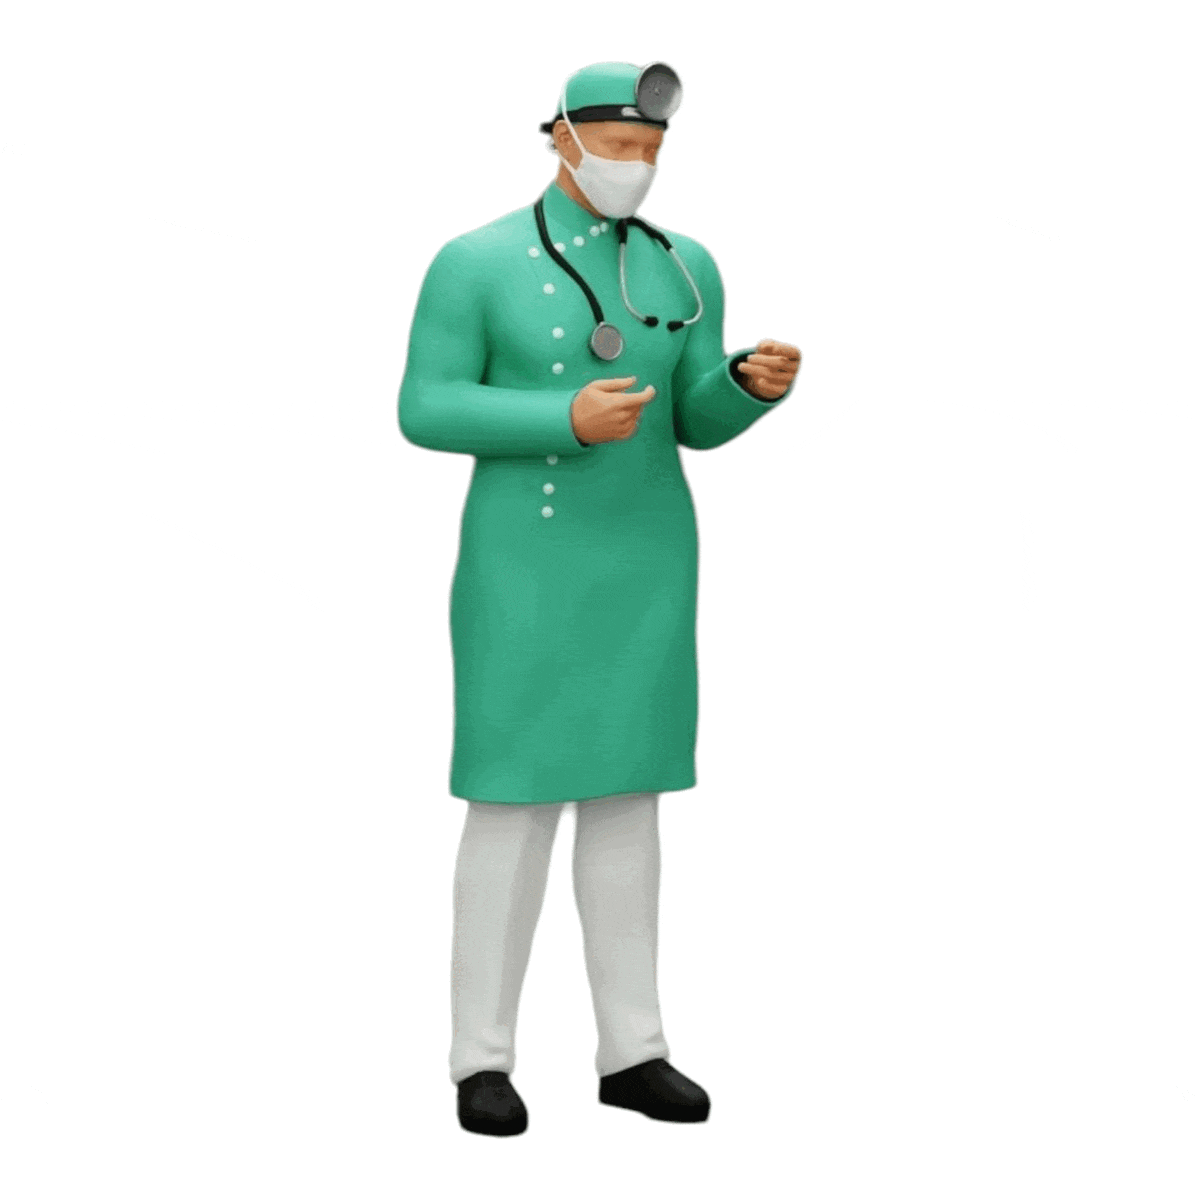 Diorama Modellbau Produktfoto 0: Chirurg/Arzt im Krankenhaus mit Stethoskop (Ref Nr. A29)